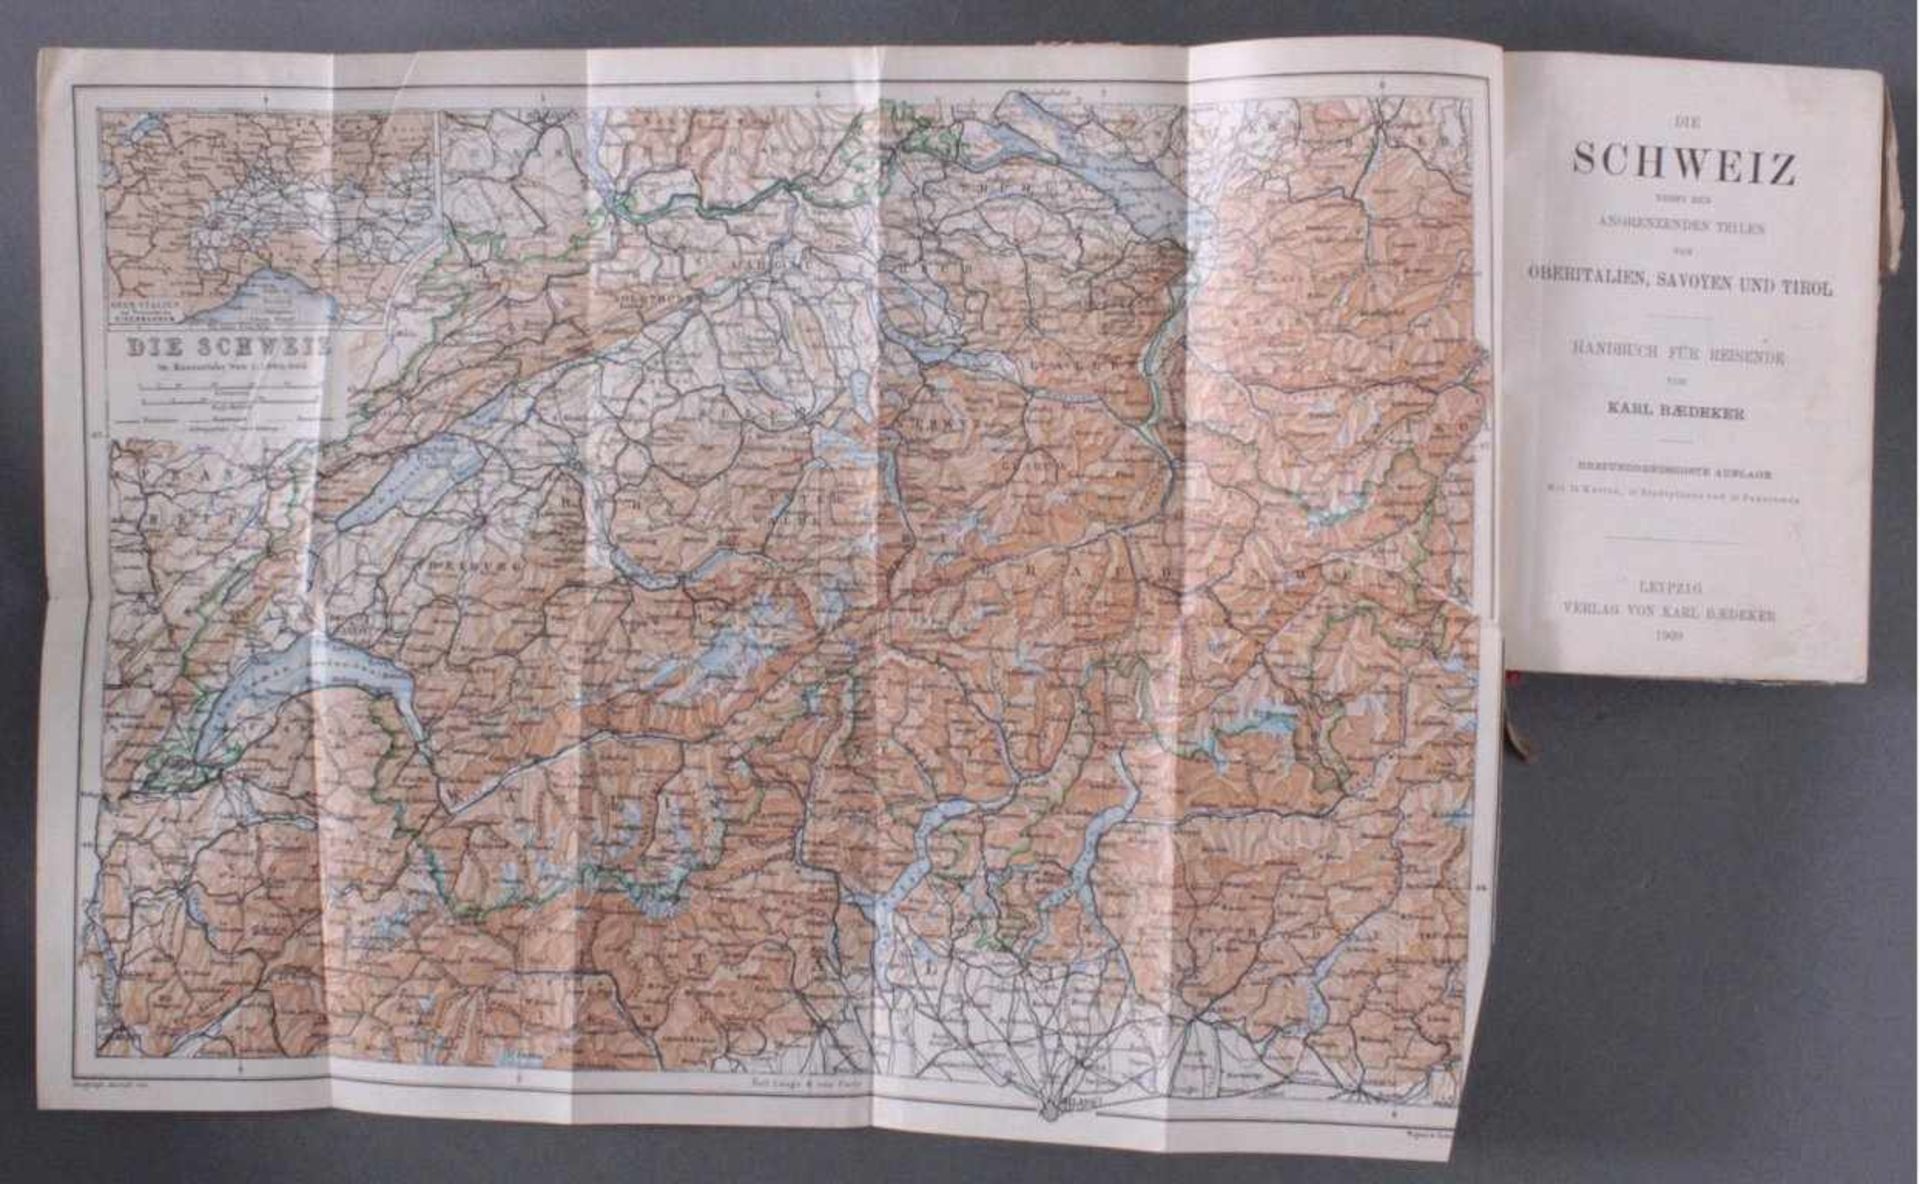 Baeddeckers Reisehandbücher 1828-1945, 8 StückSchweiz, deutsches Reich, Rheinlande, Südbayern - Bild 2 aus 2